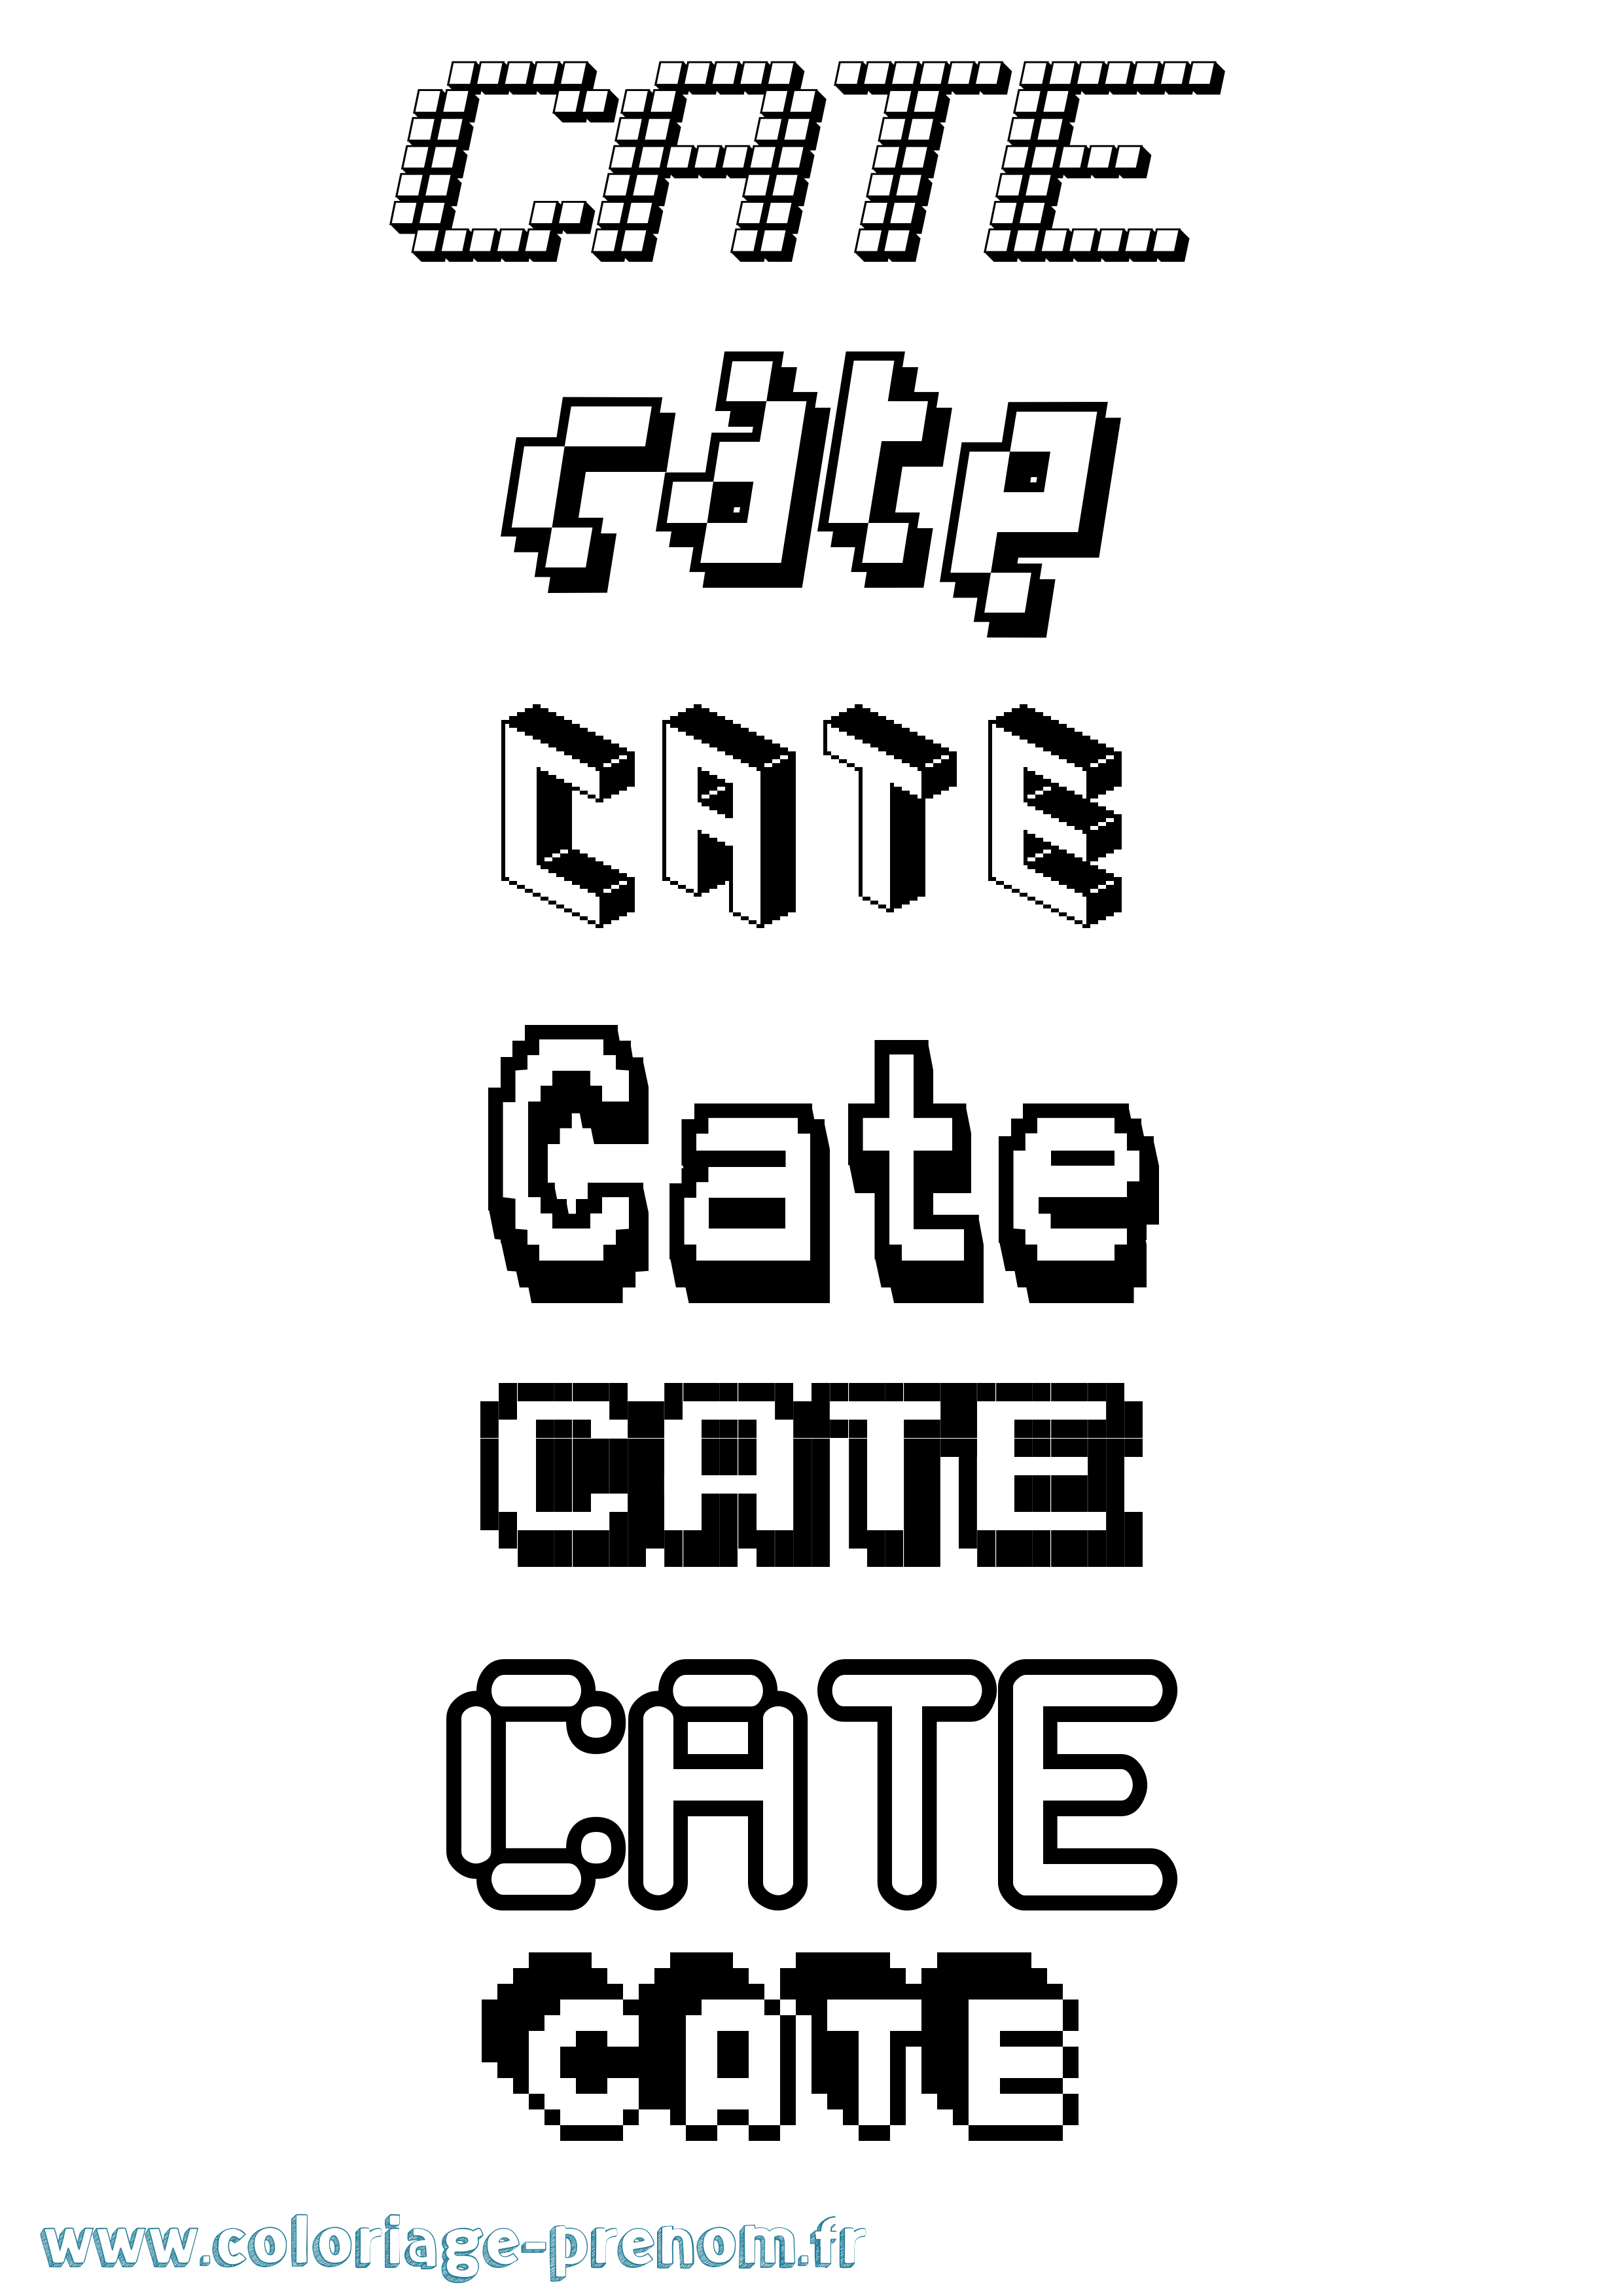 Coloriage prénom Cate Pixel